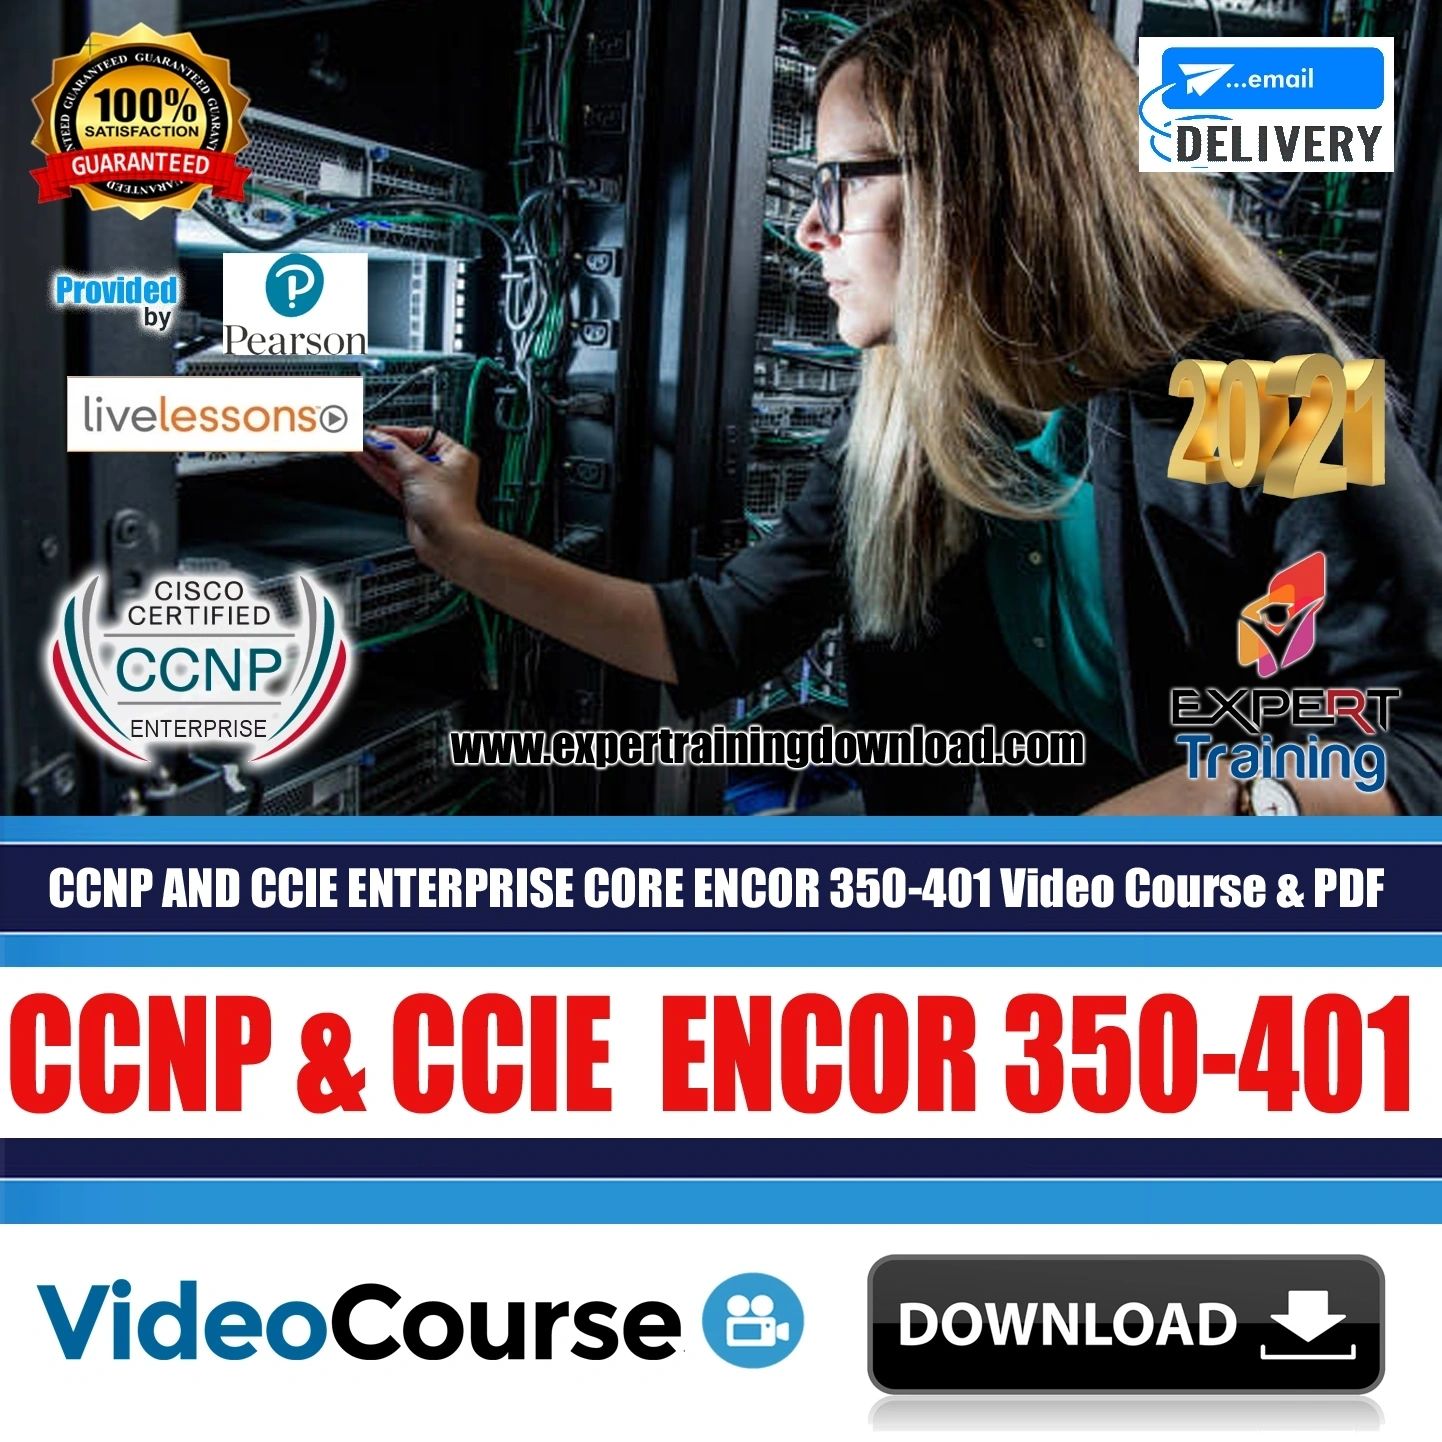 CCNP AND CCIE ENTERPRISE CORE ENCOR 350-401 (44.5 GB) Course & PDF Guides, Exam Dump